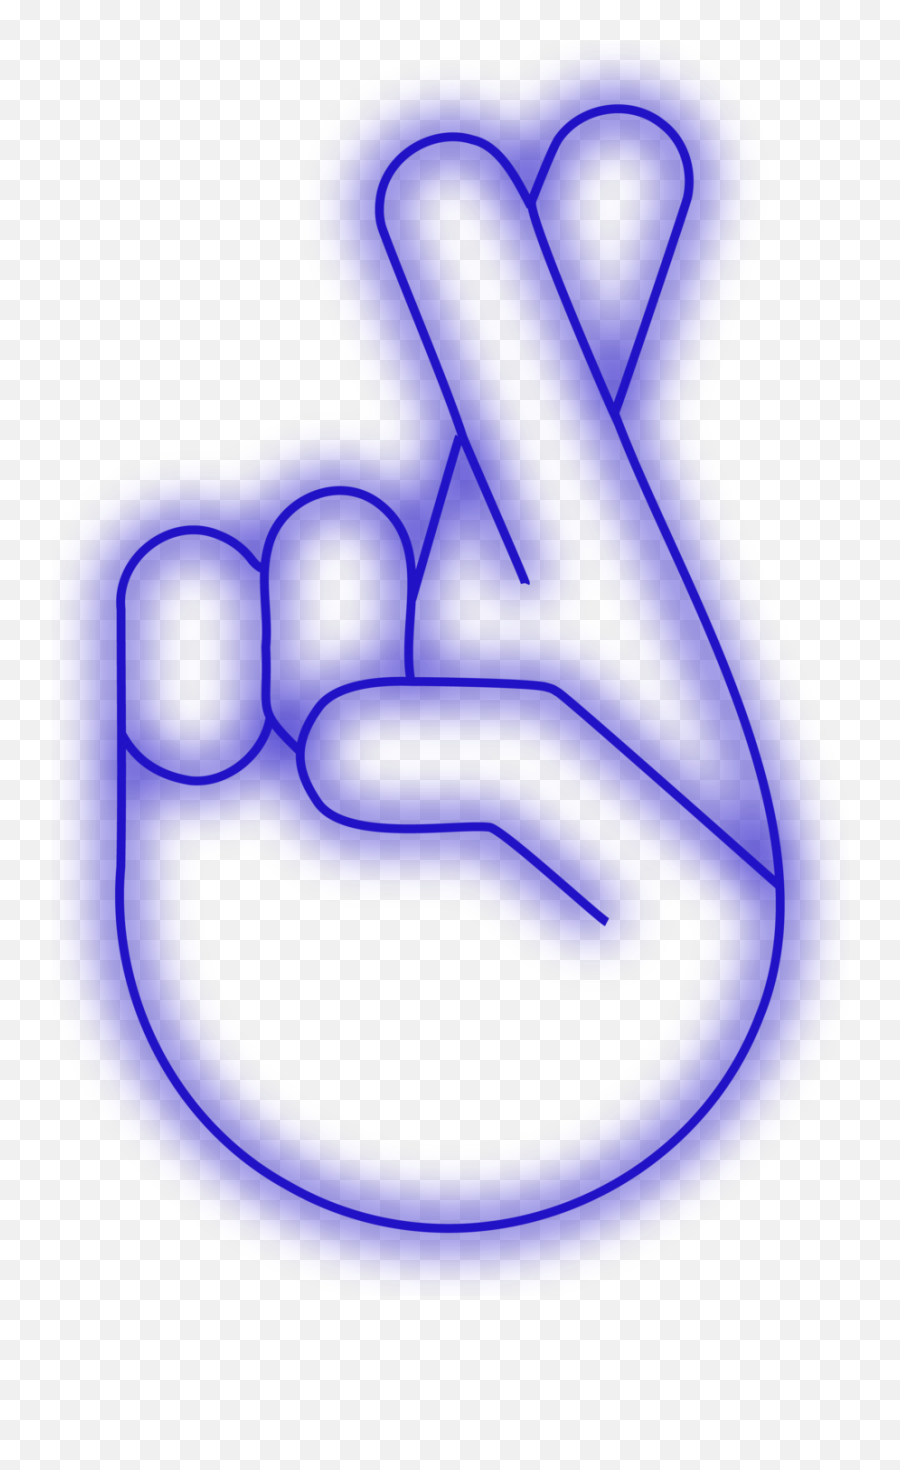 The Hghlt Emoji,Black Finger Pointing Up Emoji